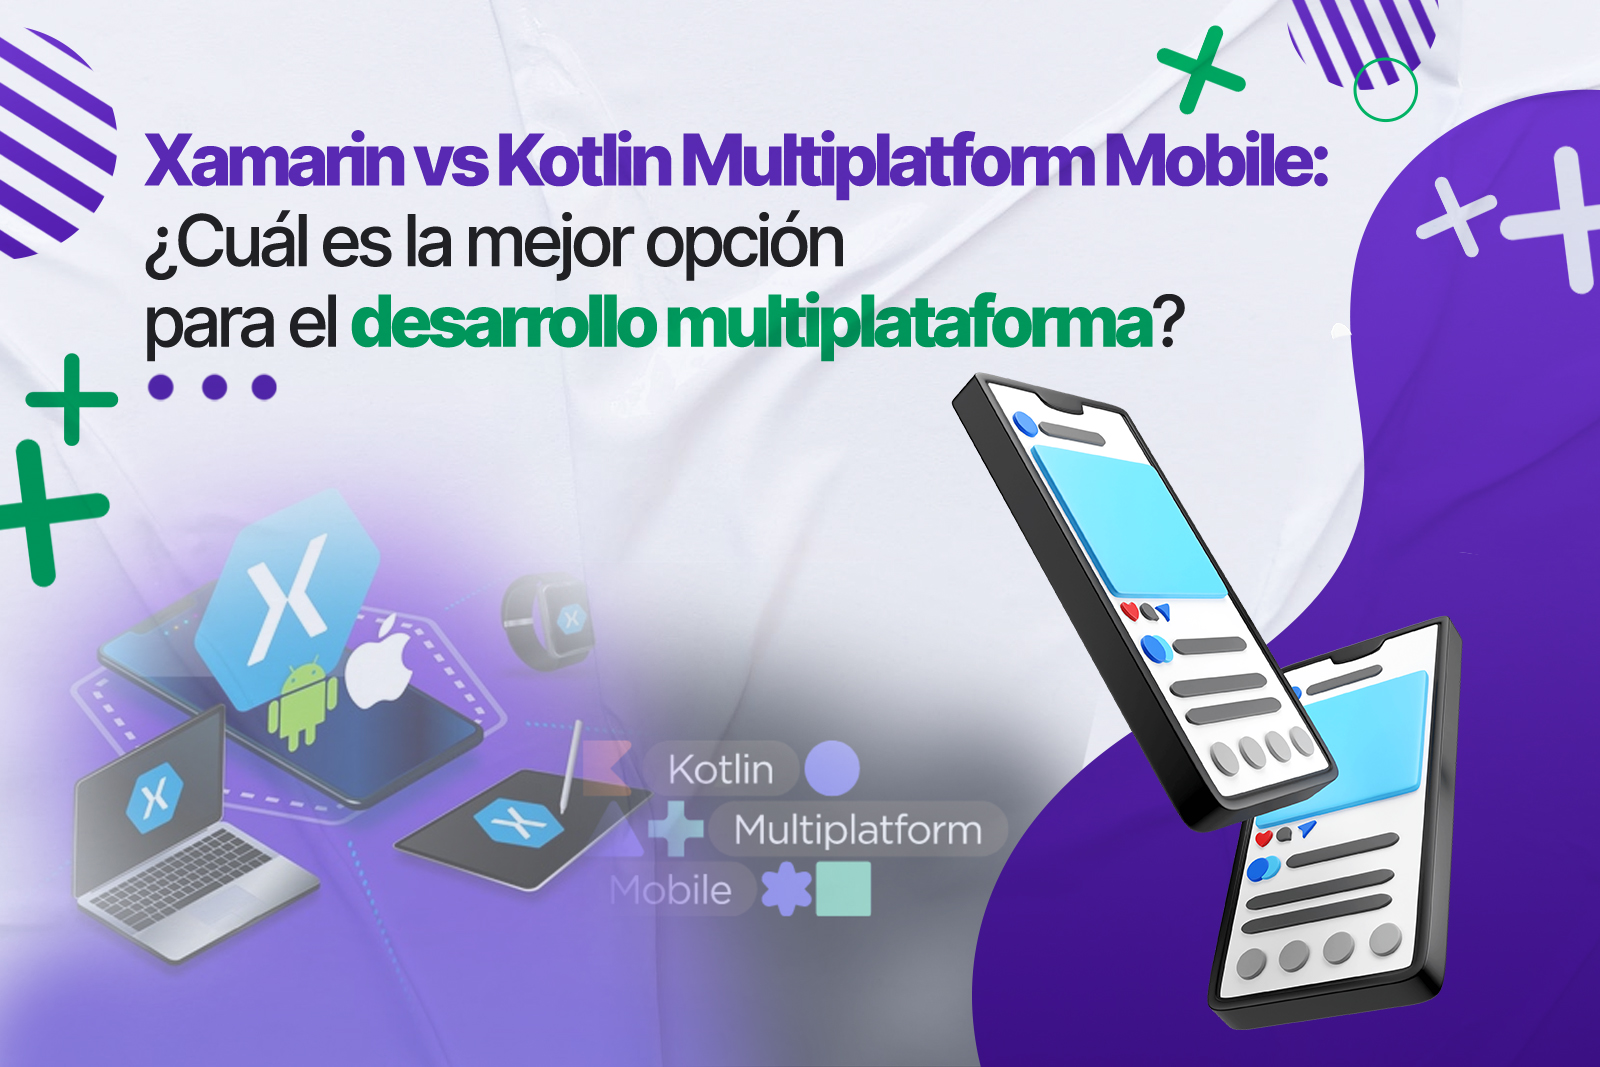 Xamarin vs. Kotlin Multiplatform Mobile: